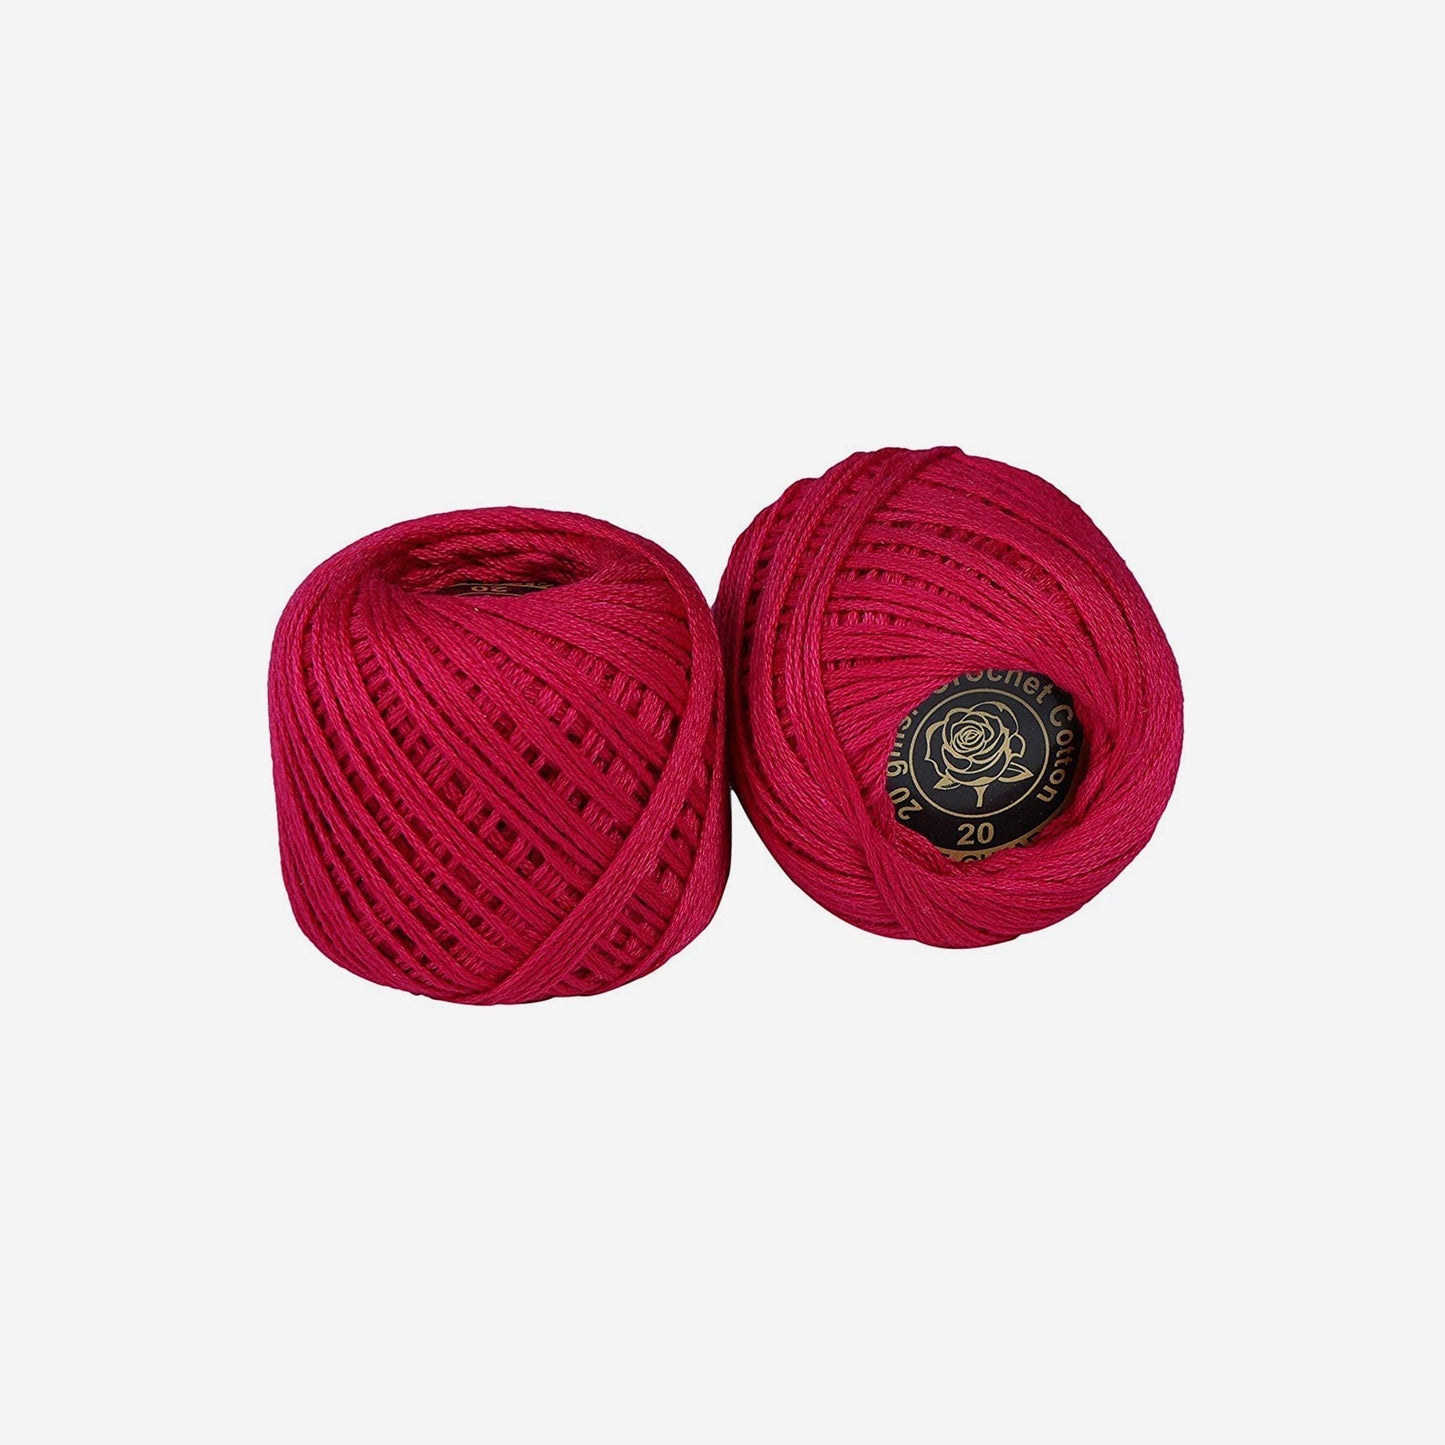 Hand-crochet hoops (Variation 5 )